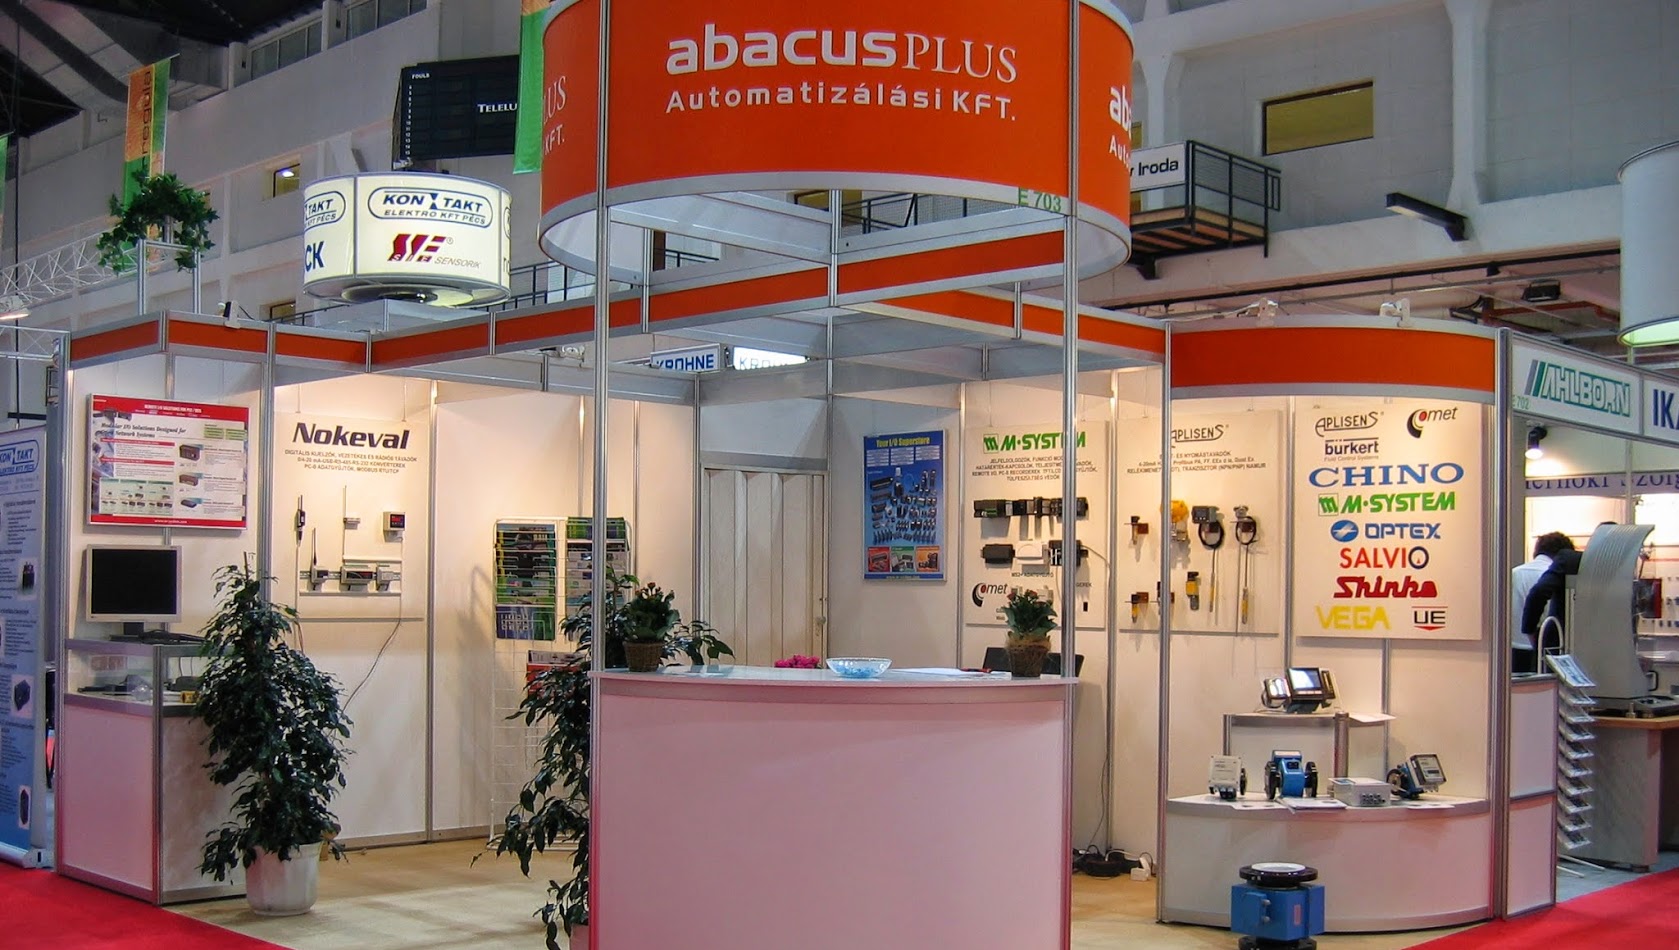 ABACUS PLUS Automatizálási Kft. standja a Magyar regula kiállításon.